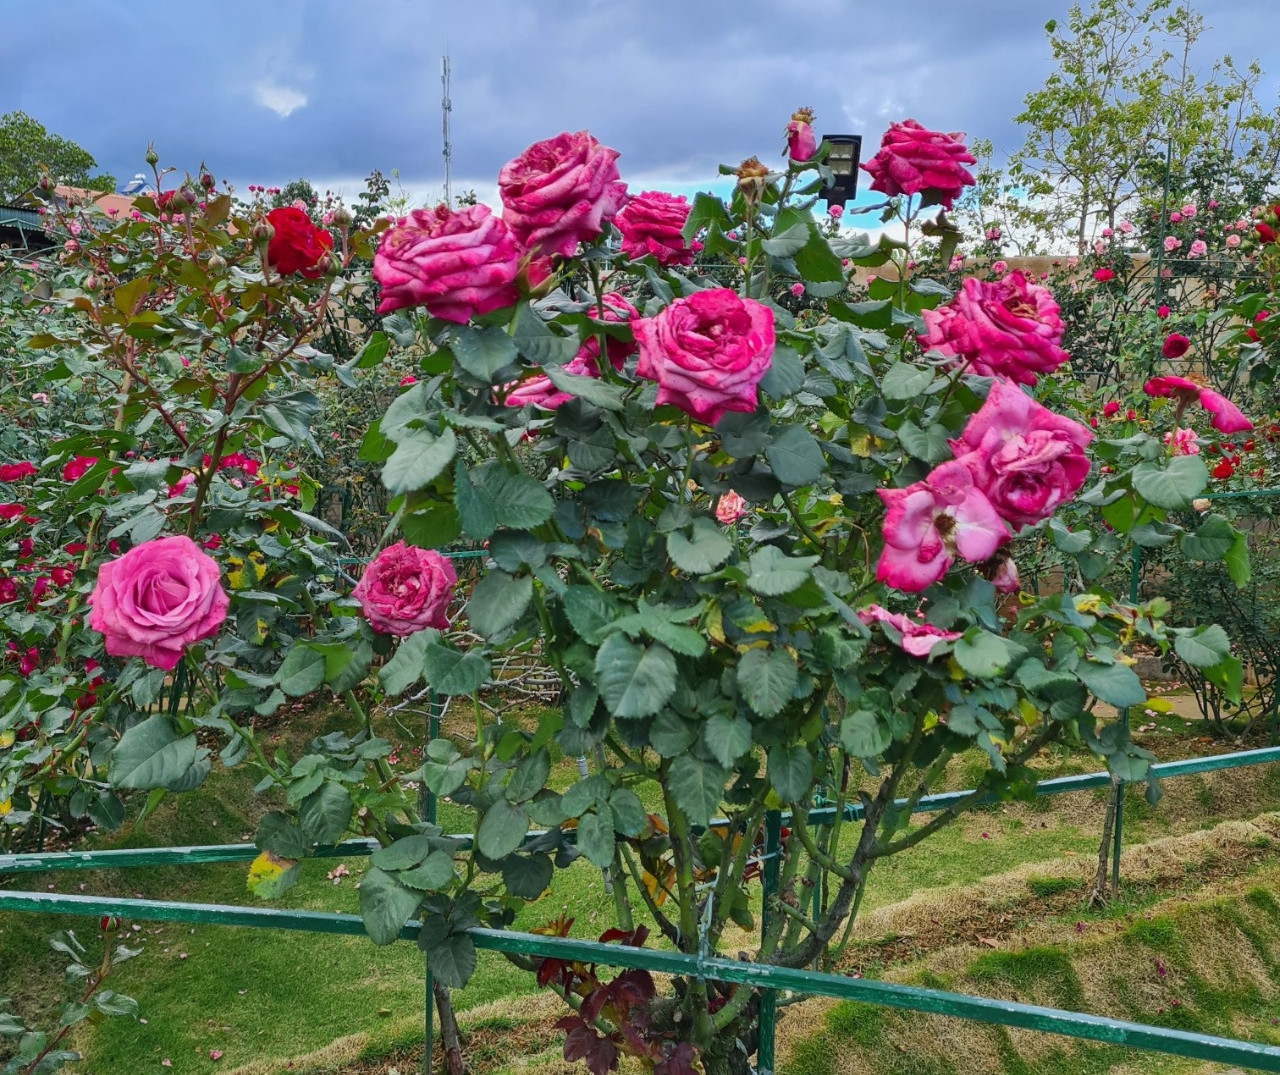 Hãy khám phá không gian tuyệt vời và bình yên của vườn hoa hồng tuyệt đẹp này! Hương thơm mát mẻ của các loại hoa và màu sắc đa dạng của chúng sẽ khiến bạn cảm thấy thư giãn và thăng hoa.